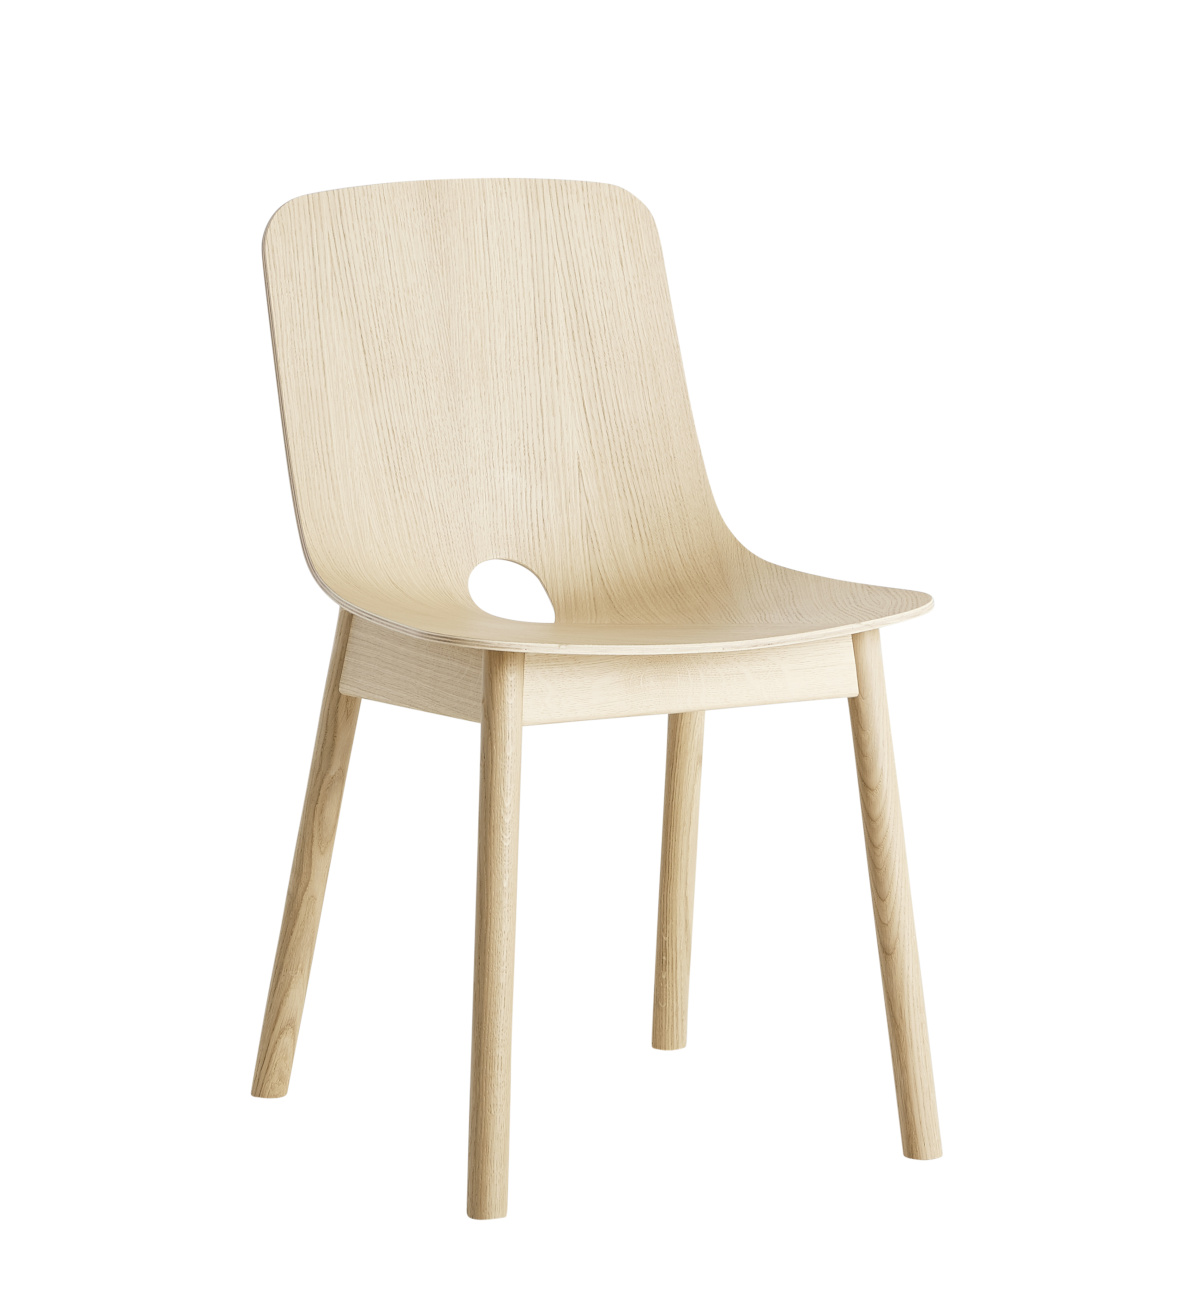 Mono Dining Stuhl, eiche weiß pigmentiert